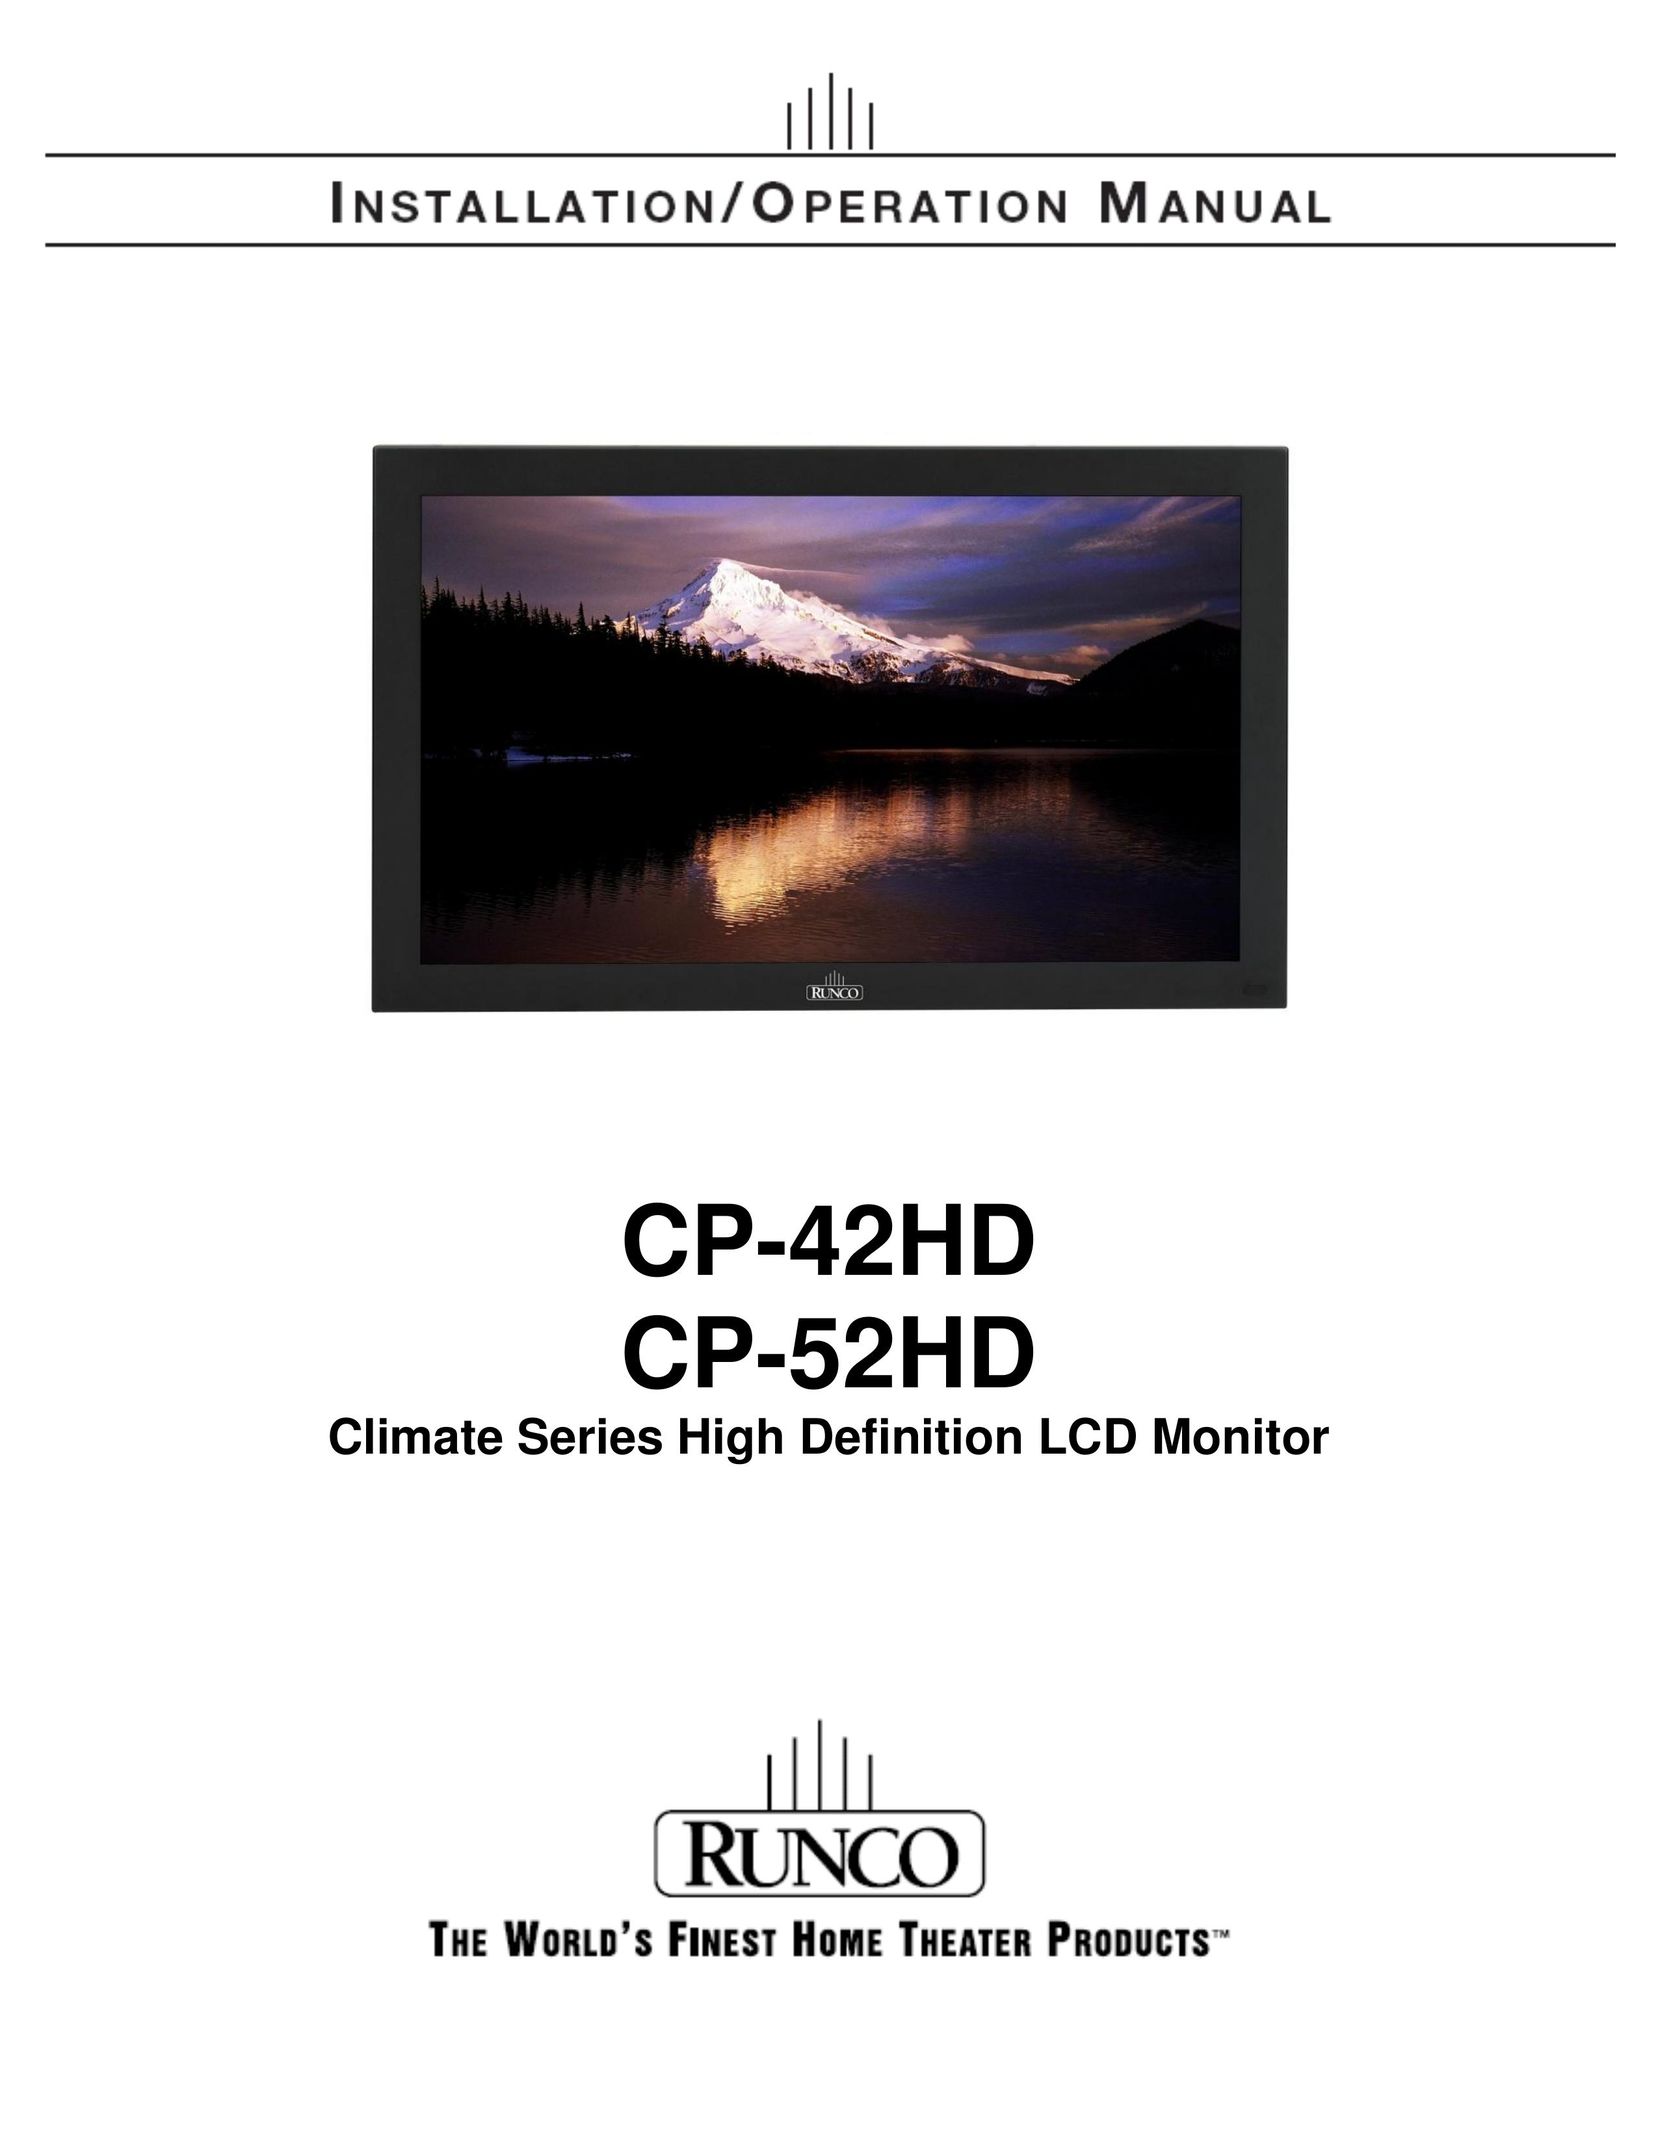 Runco CP-52HD Computer Monitor User Manual